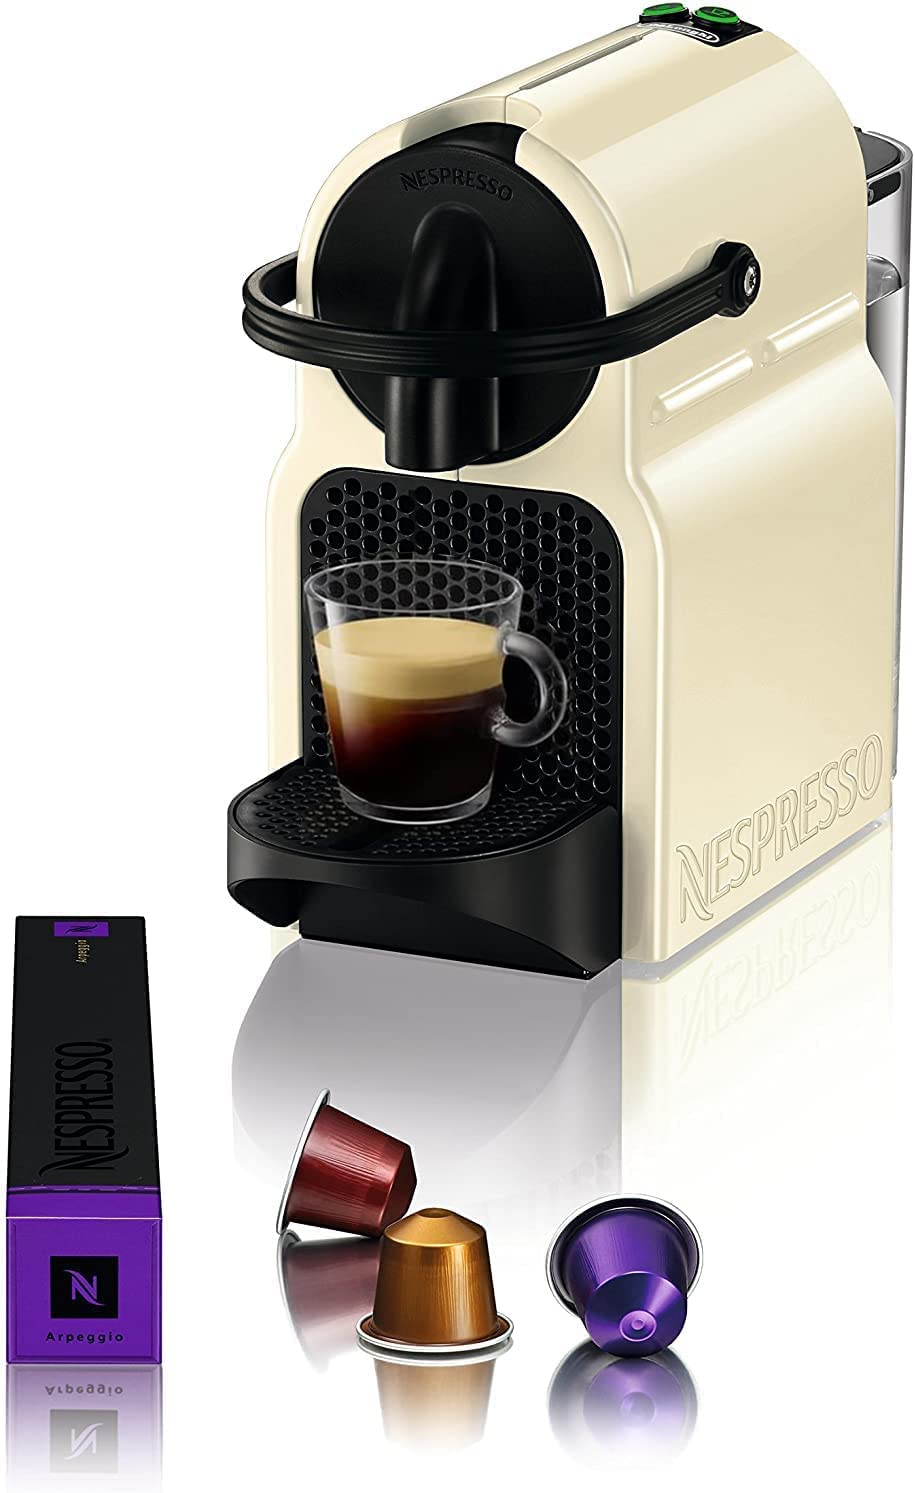 DeLonghi EN80CW coffee maker - coffee makers (freestanding, Semi-auto, Coffee capsule, Coffee, Espresso, Cream, Buttons)